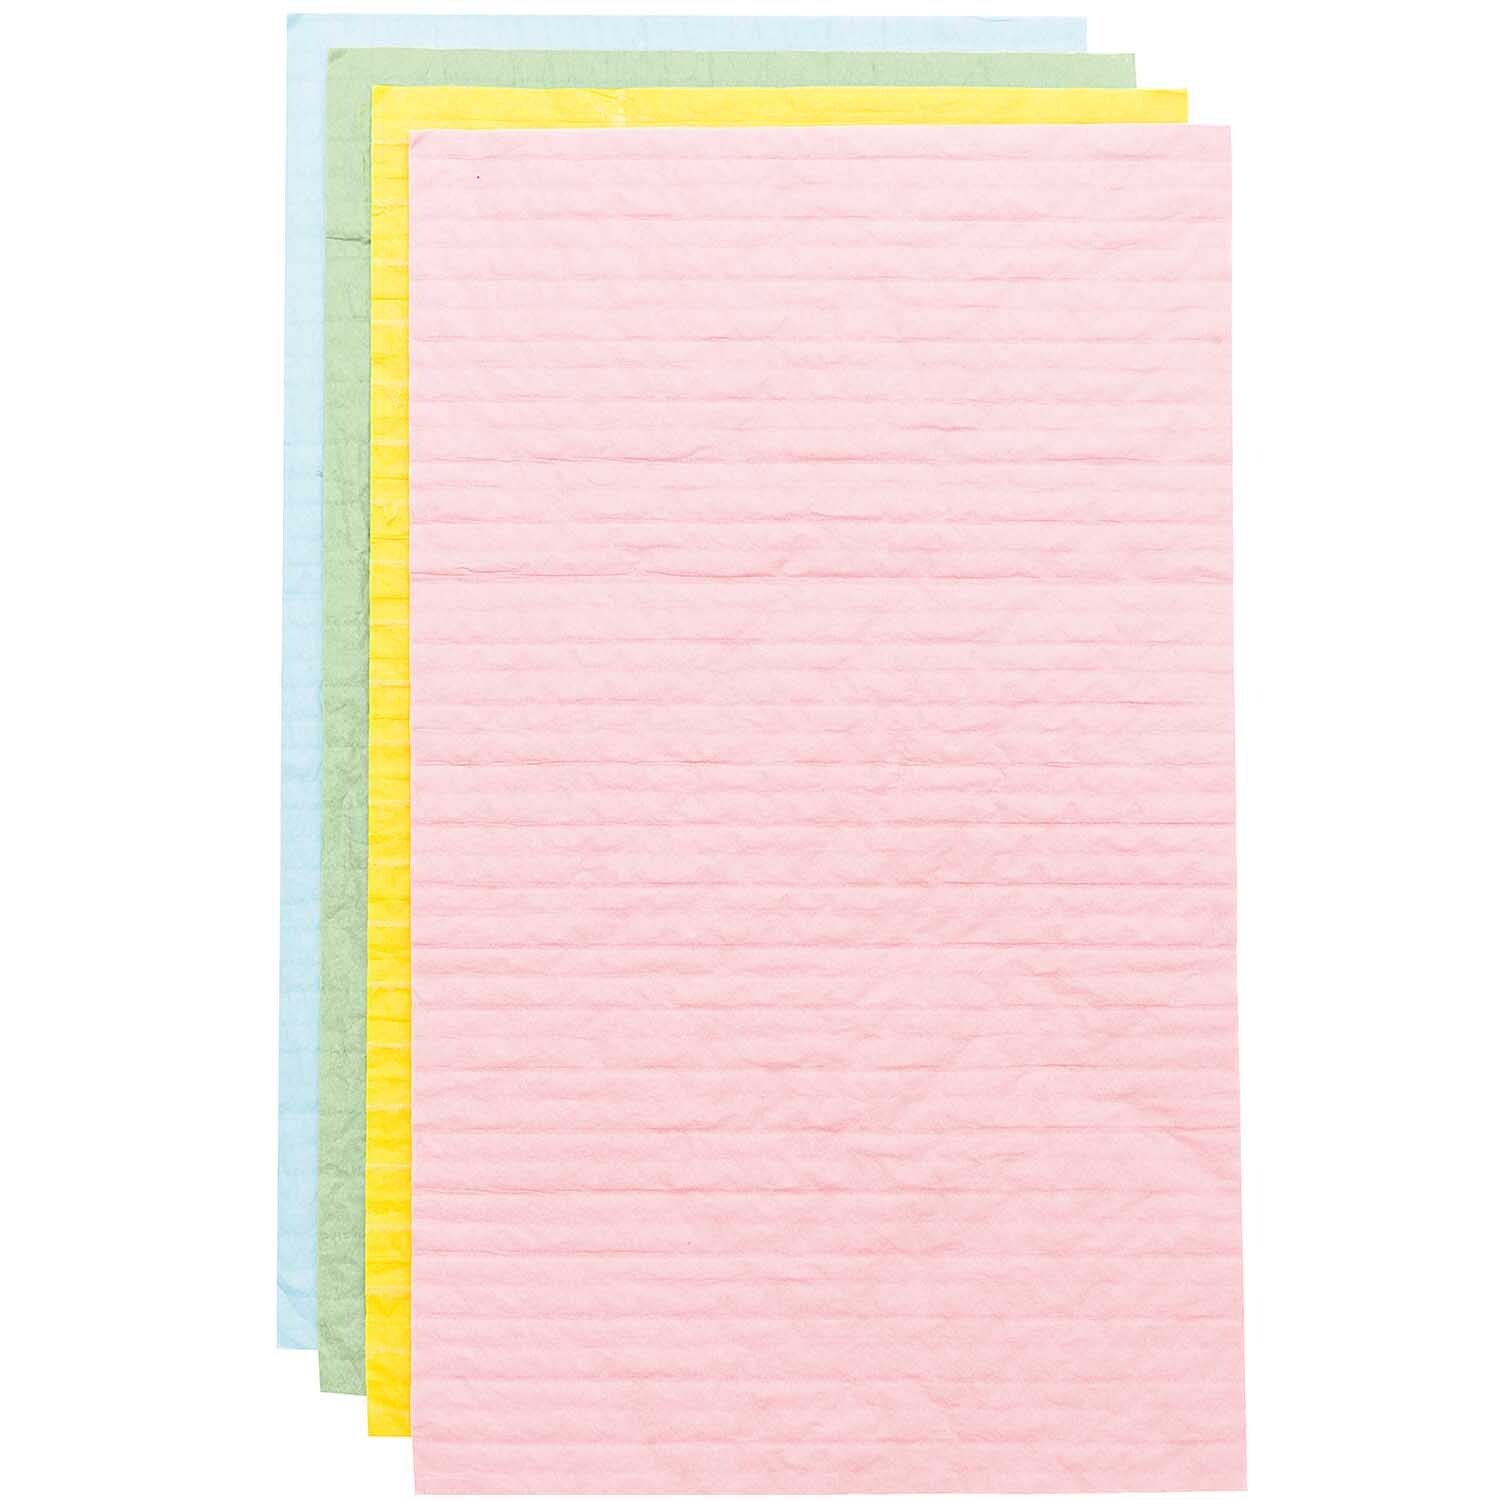 Wabenpapier pastell Mix 20x33cm 4 Bogen